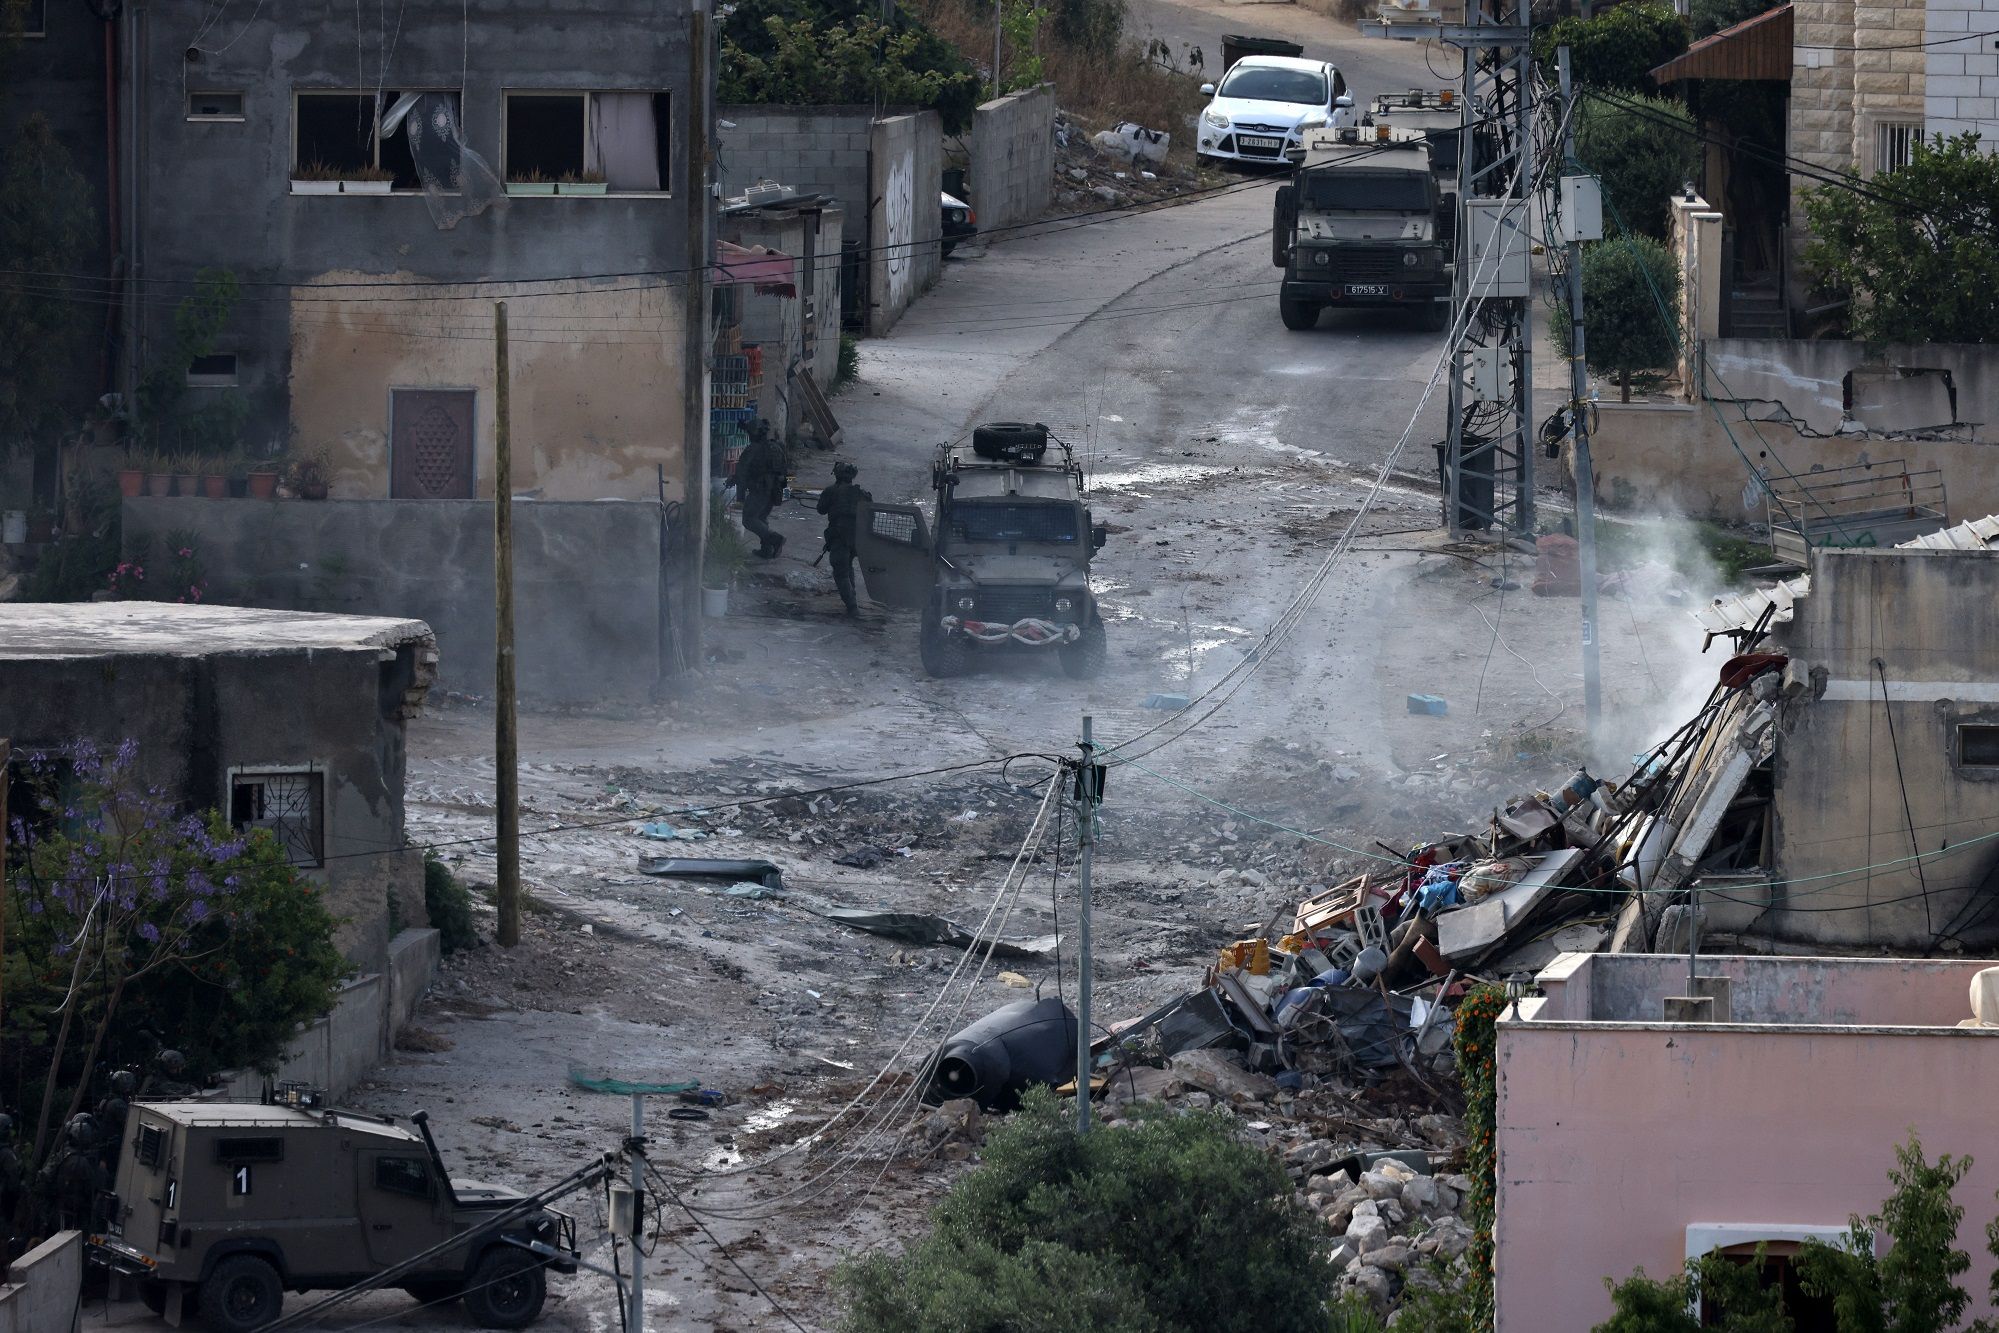 Israel Akui 8 Lagi Tentaranya Tewas di Gaza